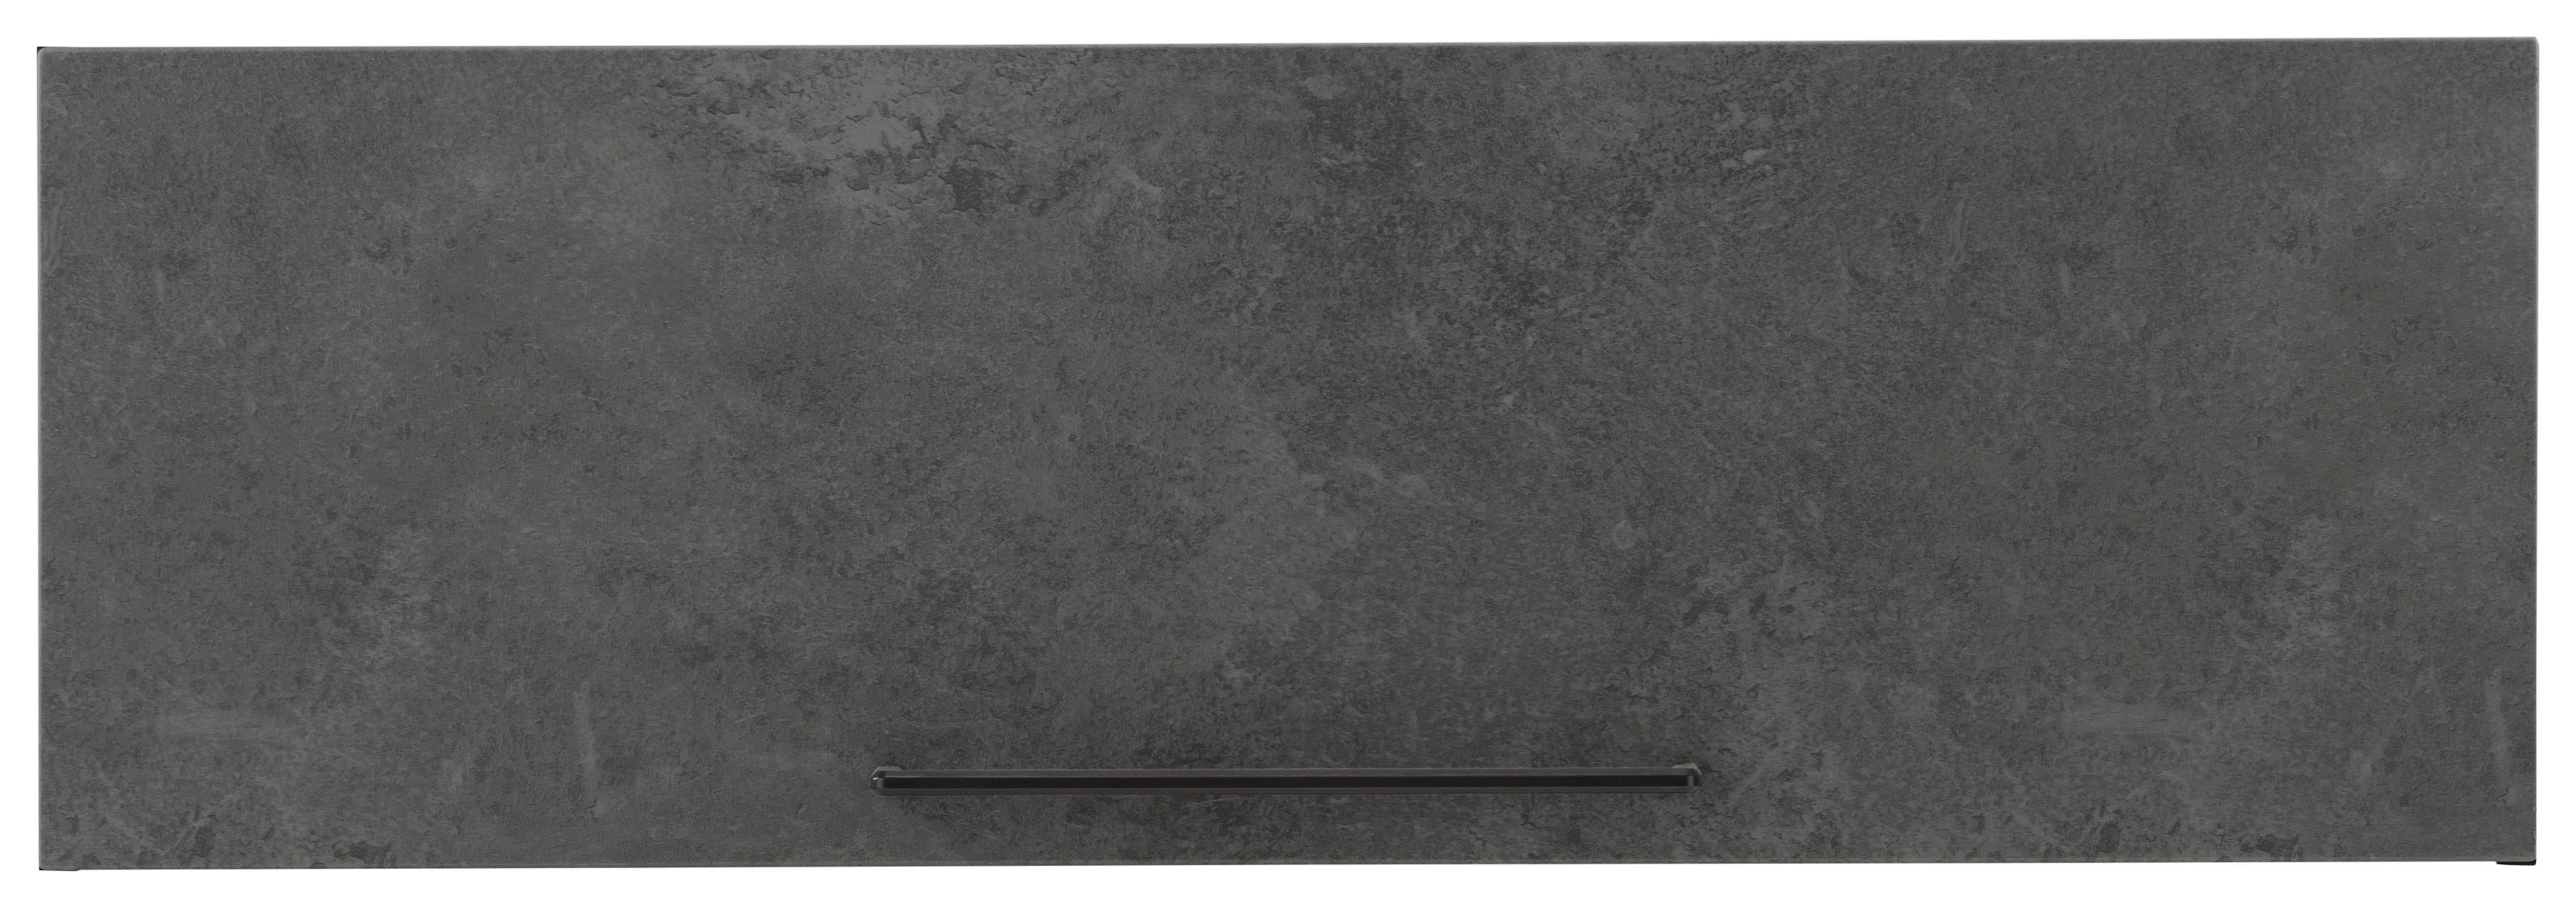 HELD MÖBEL Klapphängeschrank schwarzer Metallgriff, MDF Front grafit mit betonfarben cm Tulsa Klappe, 100 breit, 1 dunkel 